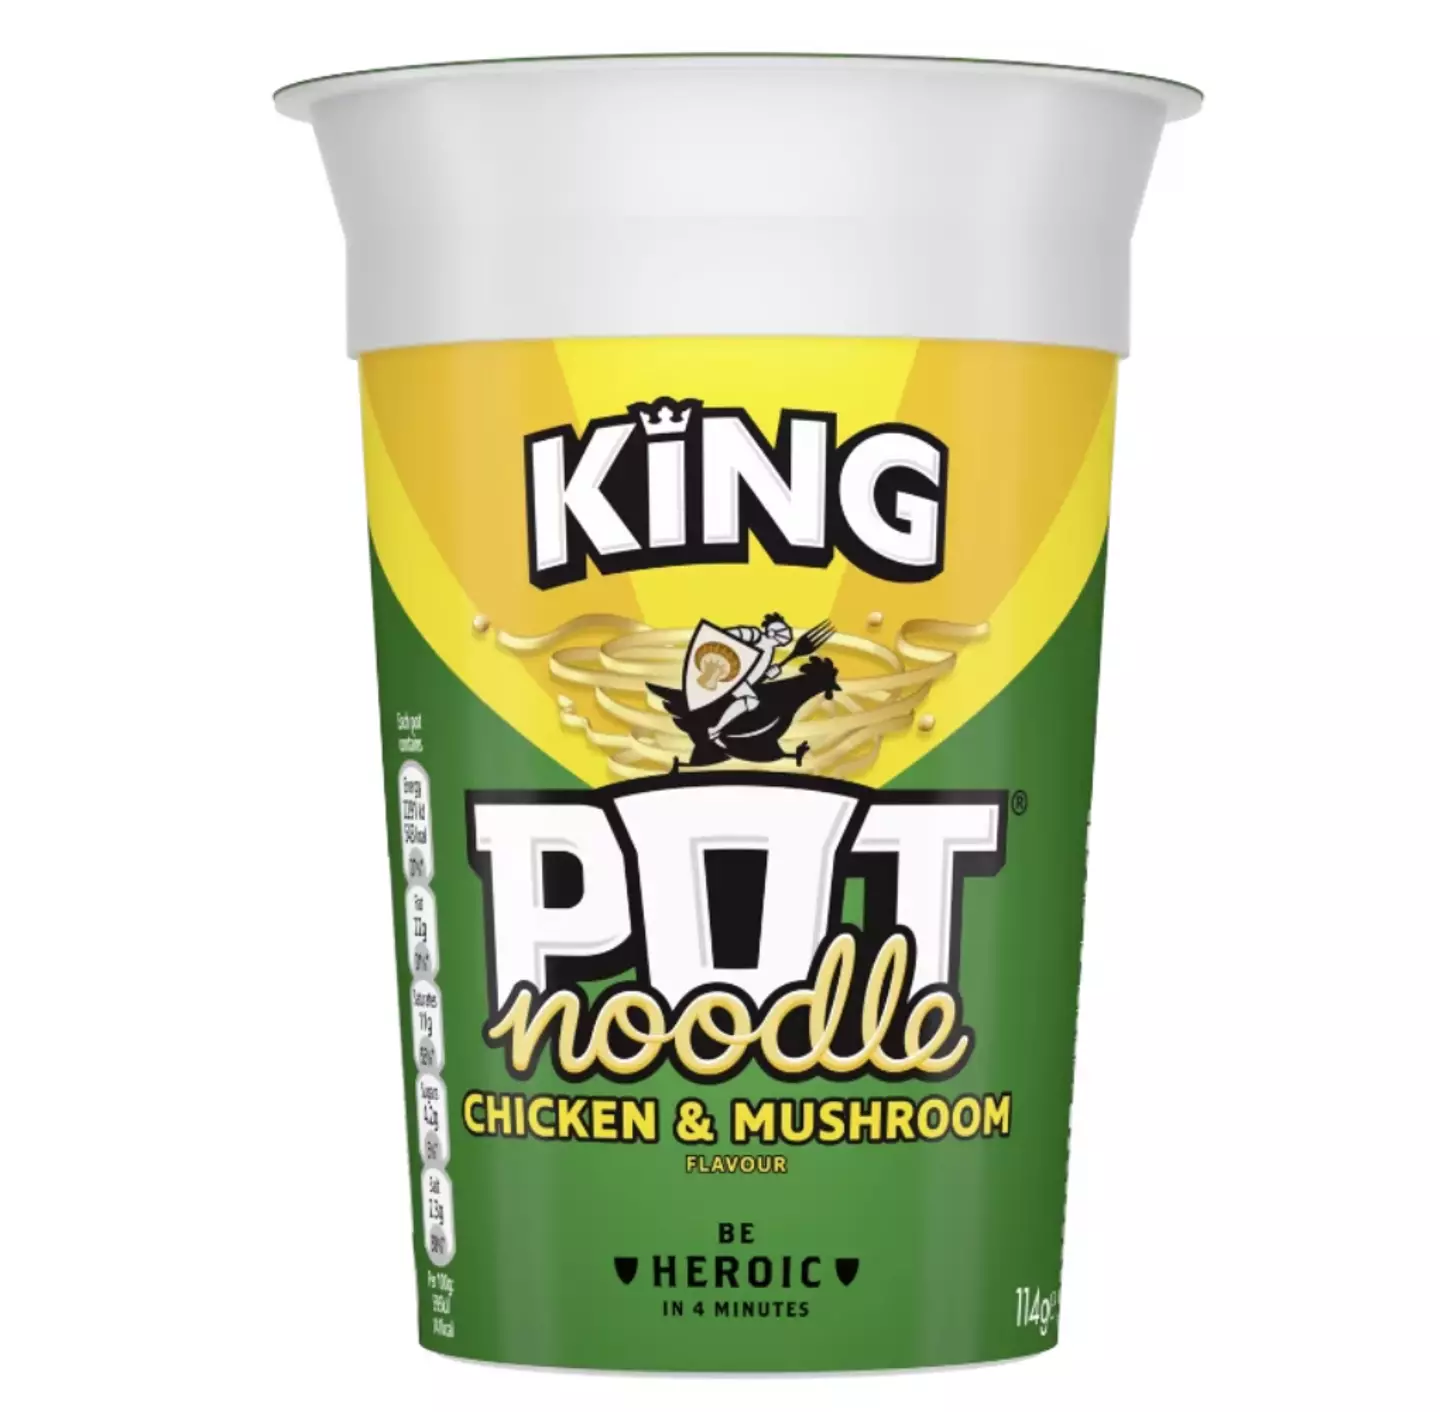 Pot Noodles are a UK kitchen staple.